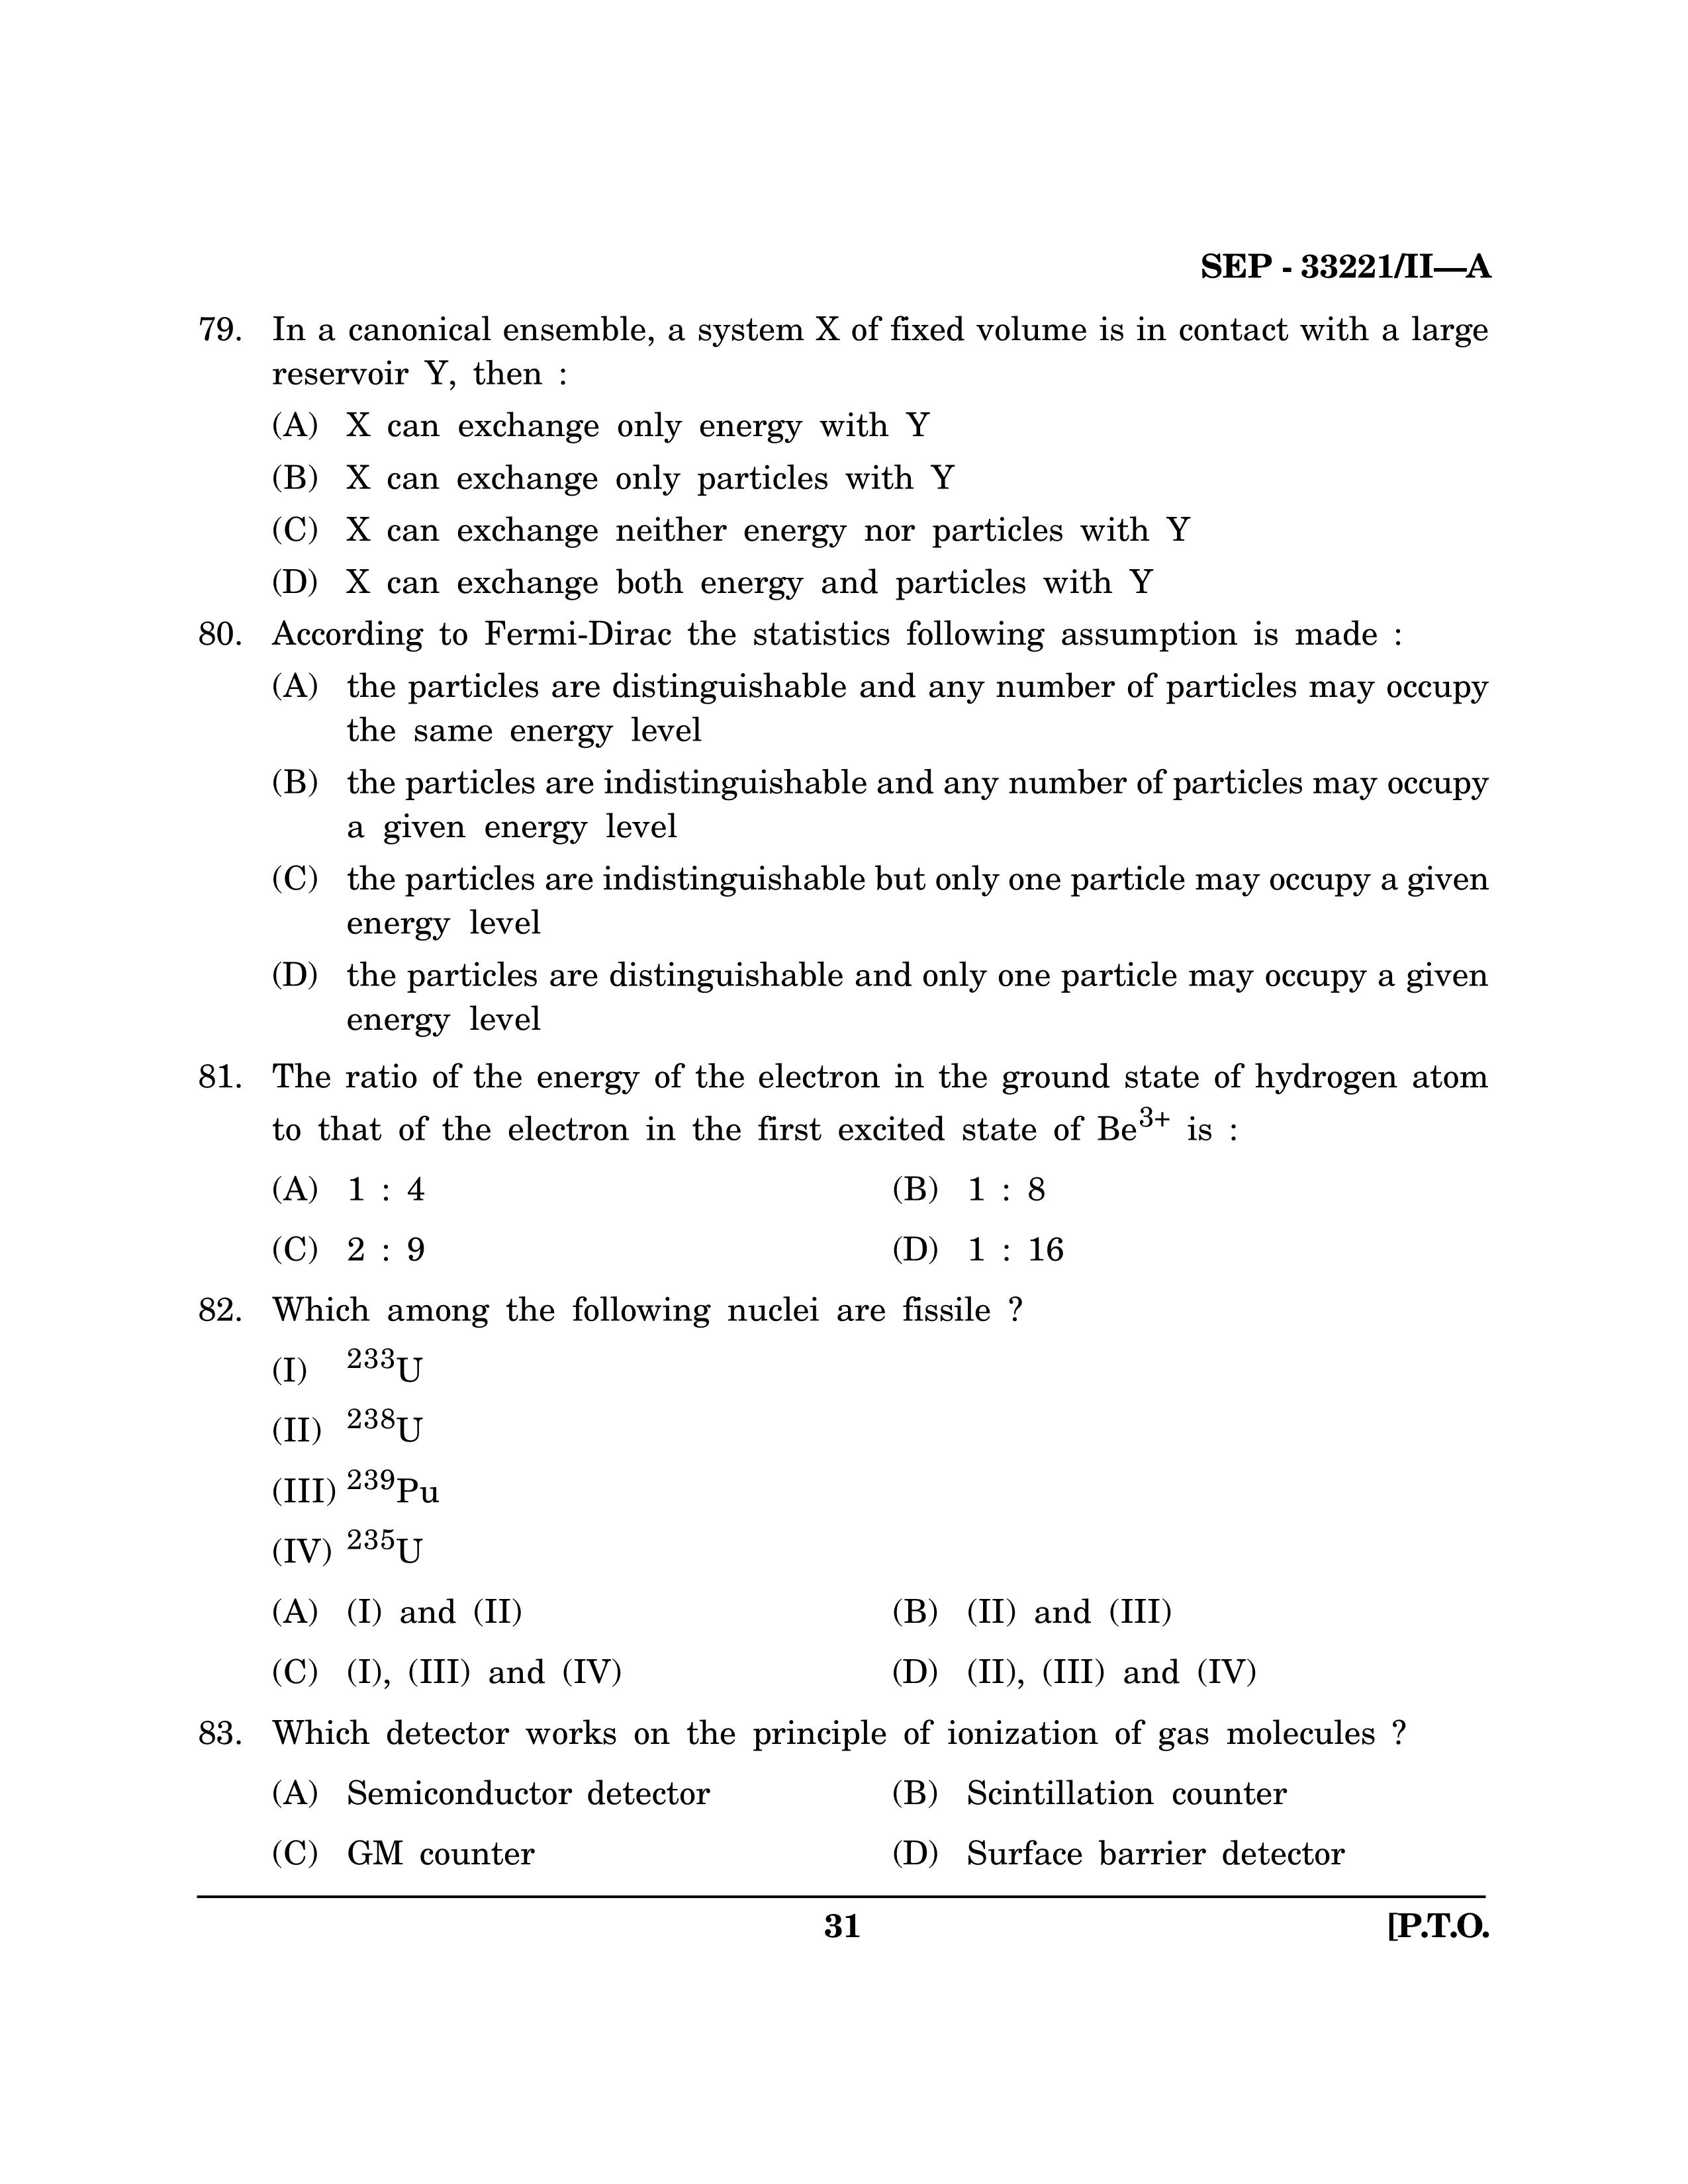 Maharashtra SET Chemical Sciences Exam Question Paper September 2021 30